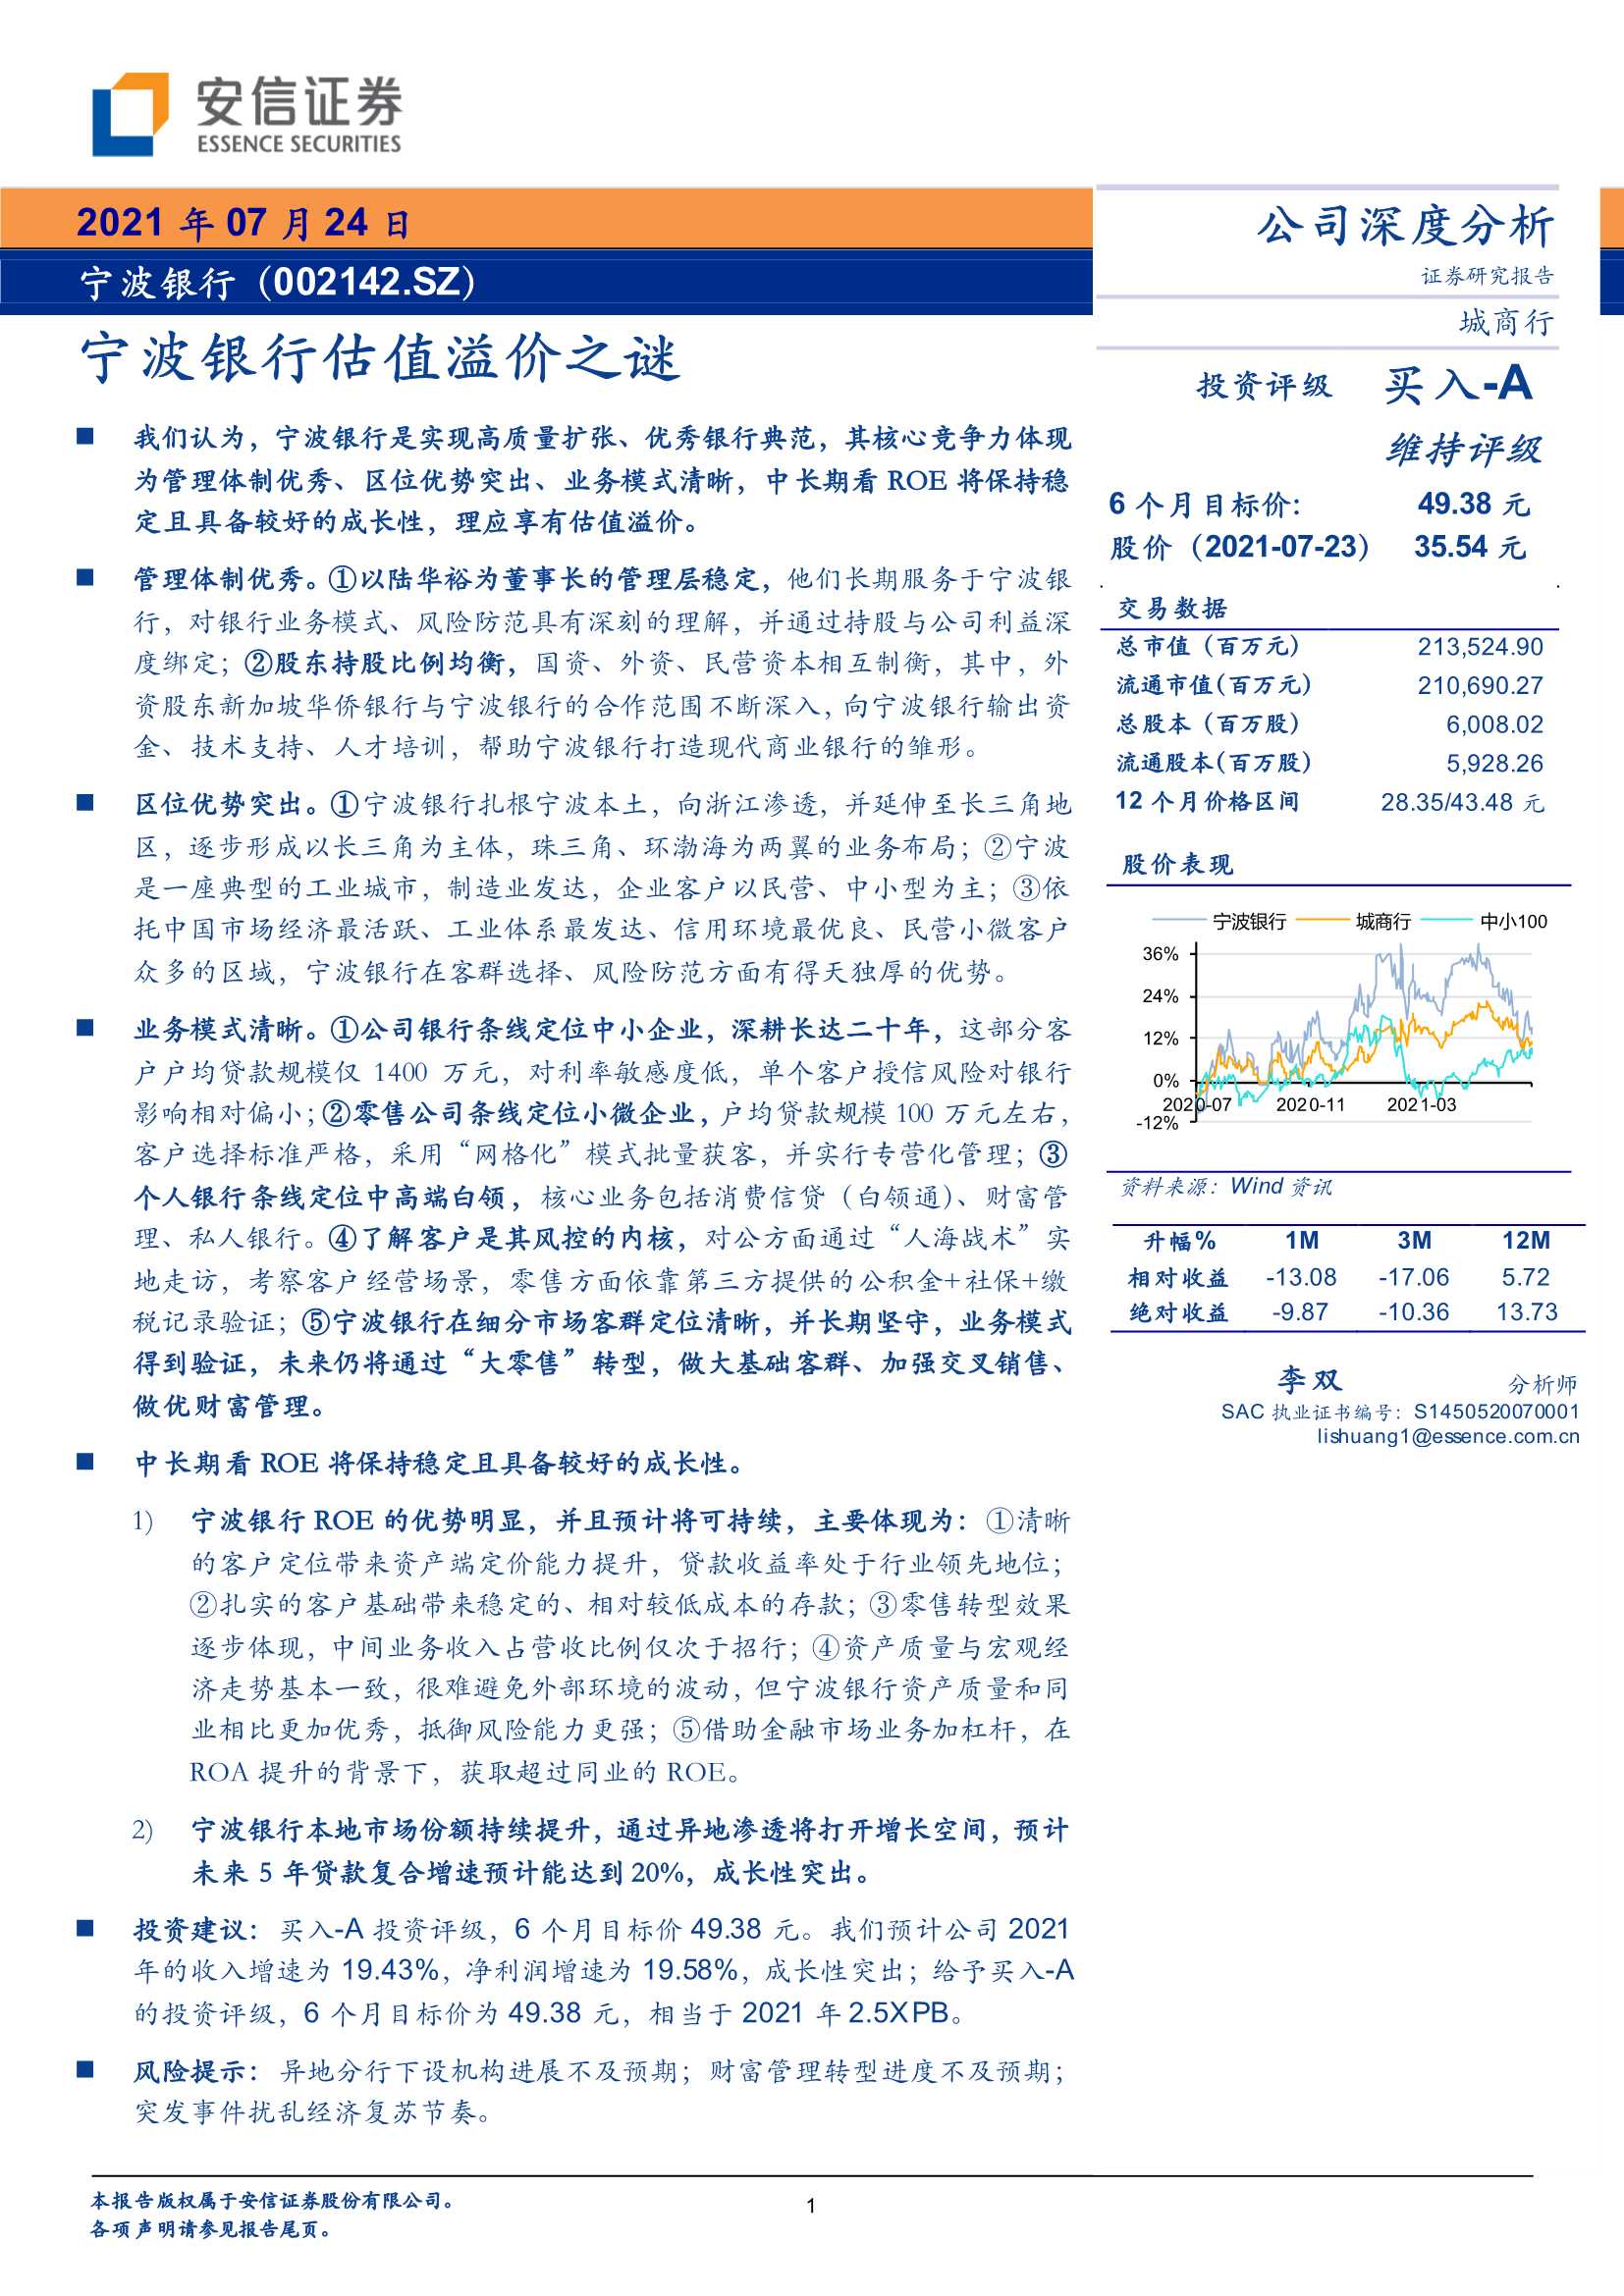 安信证券-宁波银行-002142-宁波银行估值溢价之谜-20210724-53页